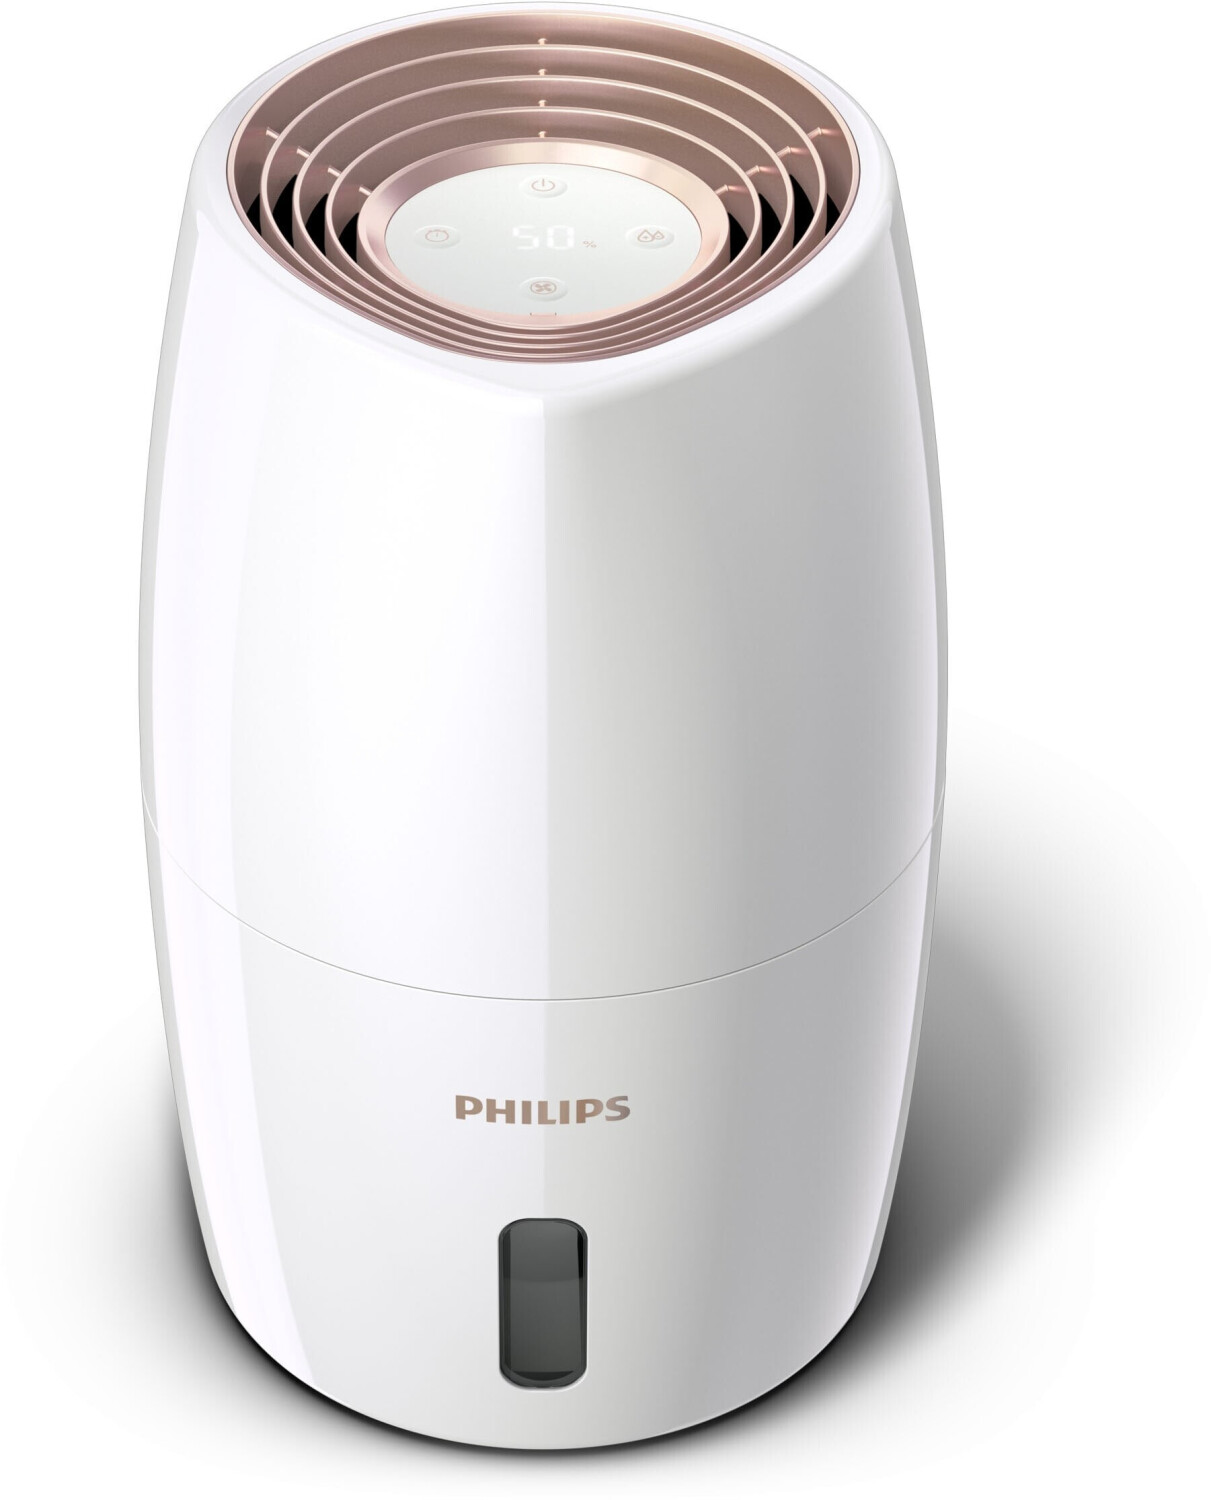 Philips Purificateur d'air et humidificateur